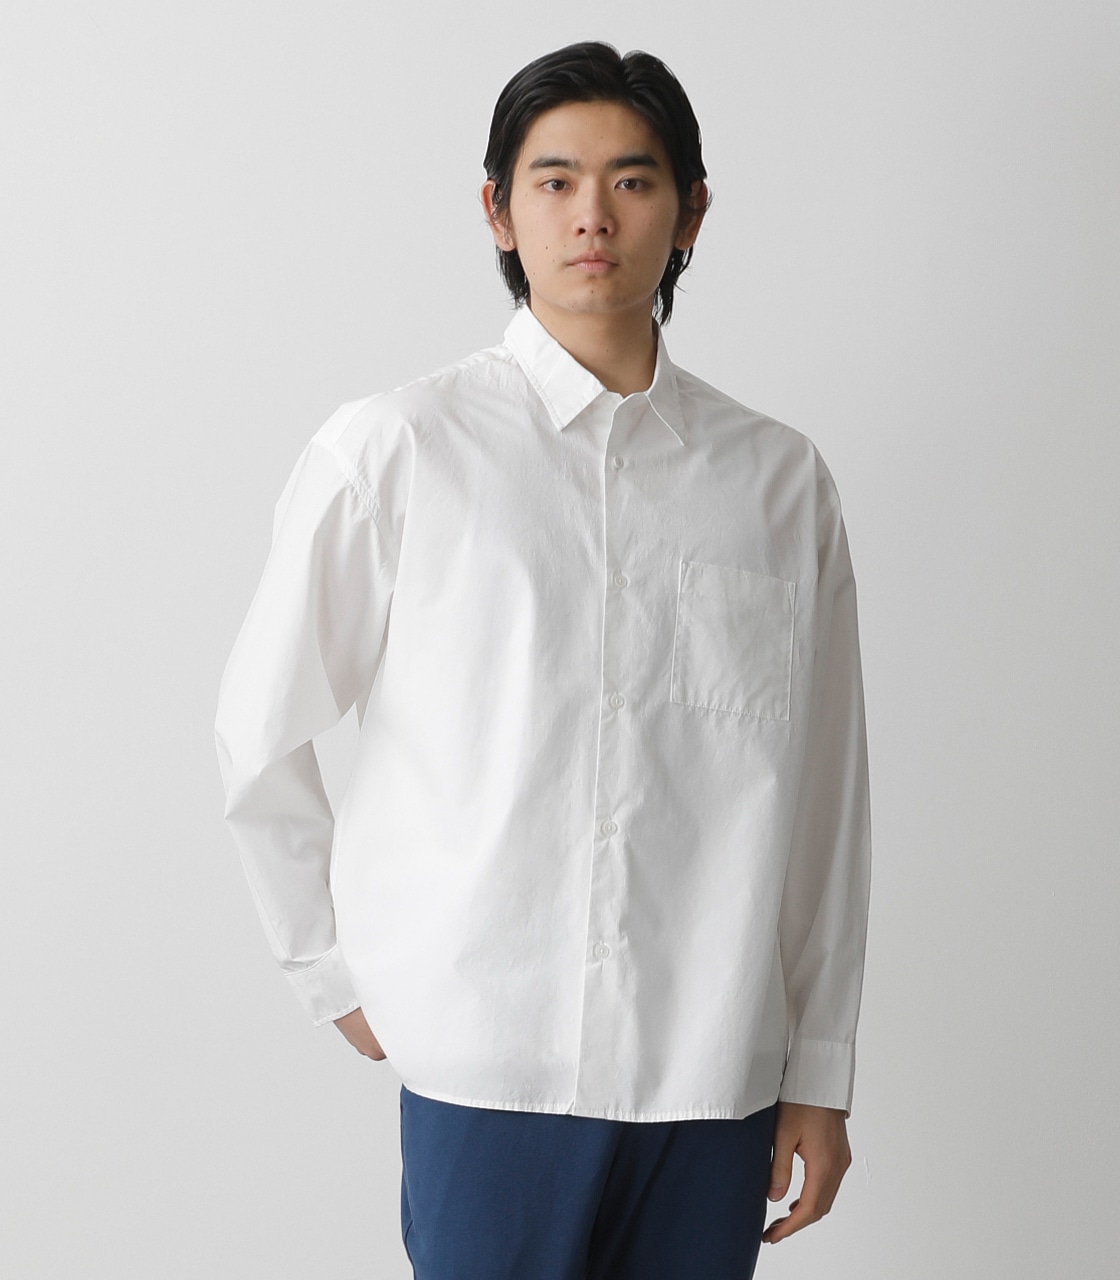 SUPIMA COTTON SHIRT/スーピマコットンシャツ【MOOK54掲載 90349】